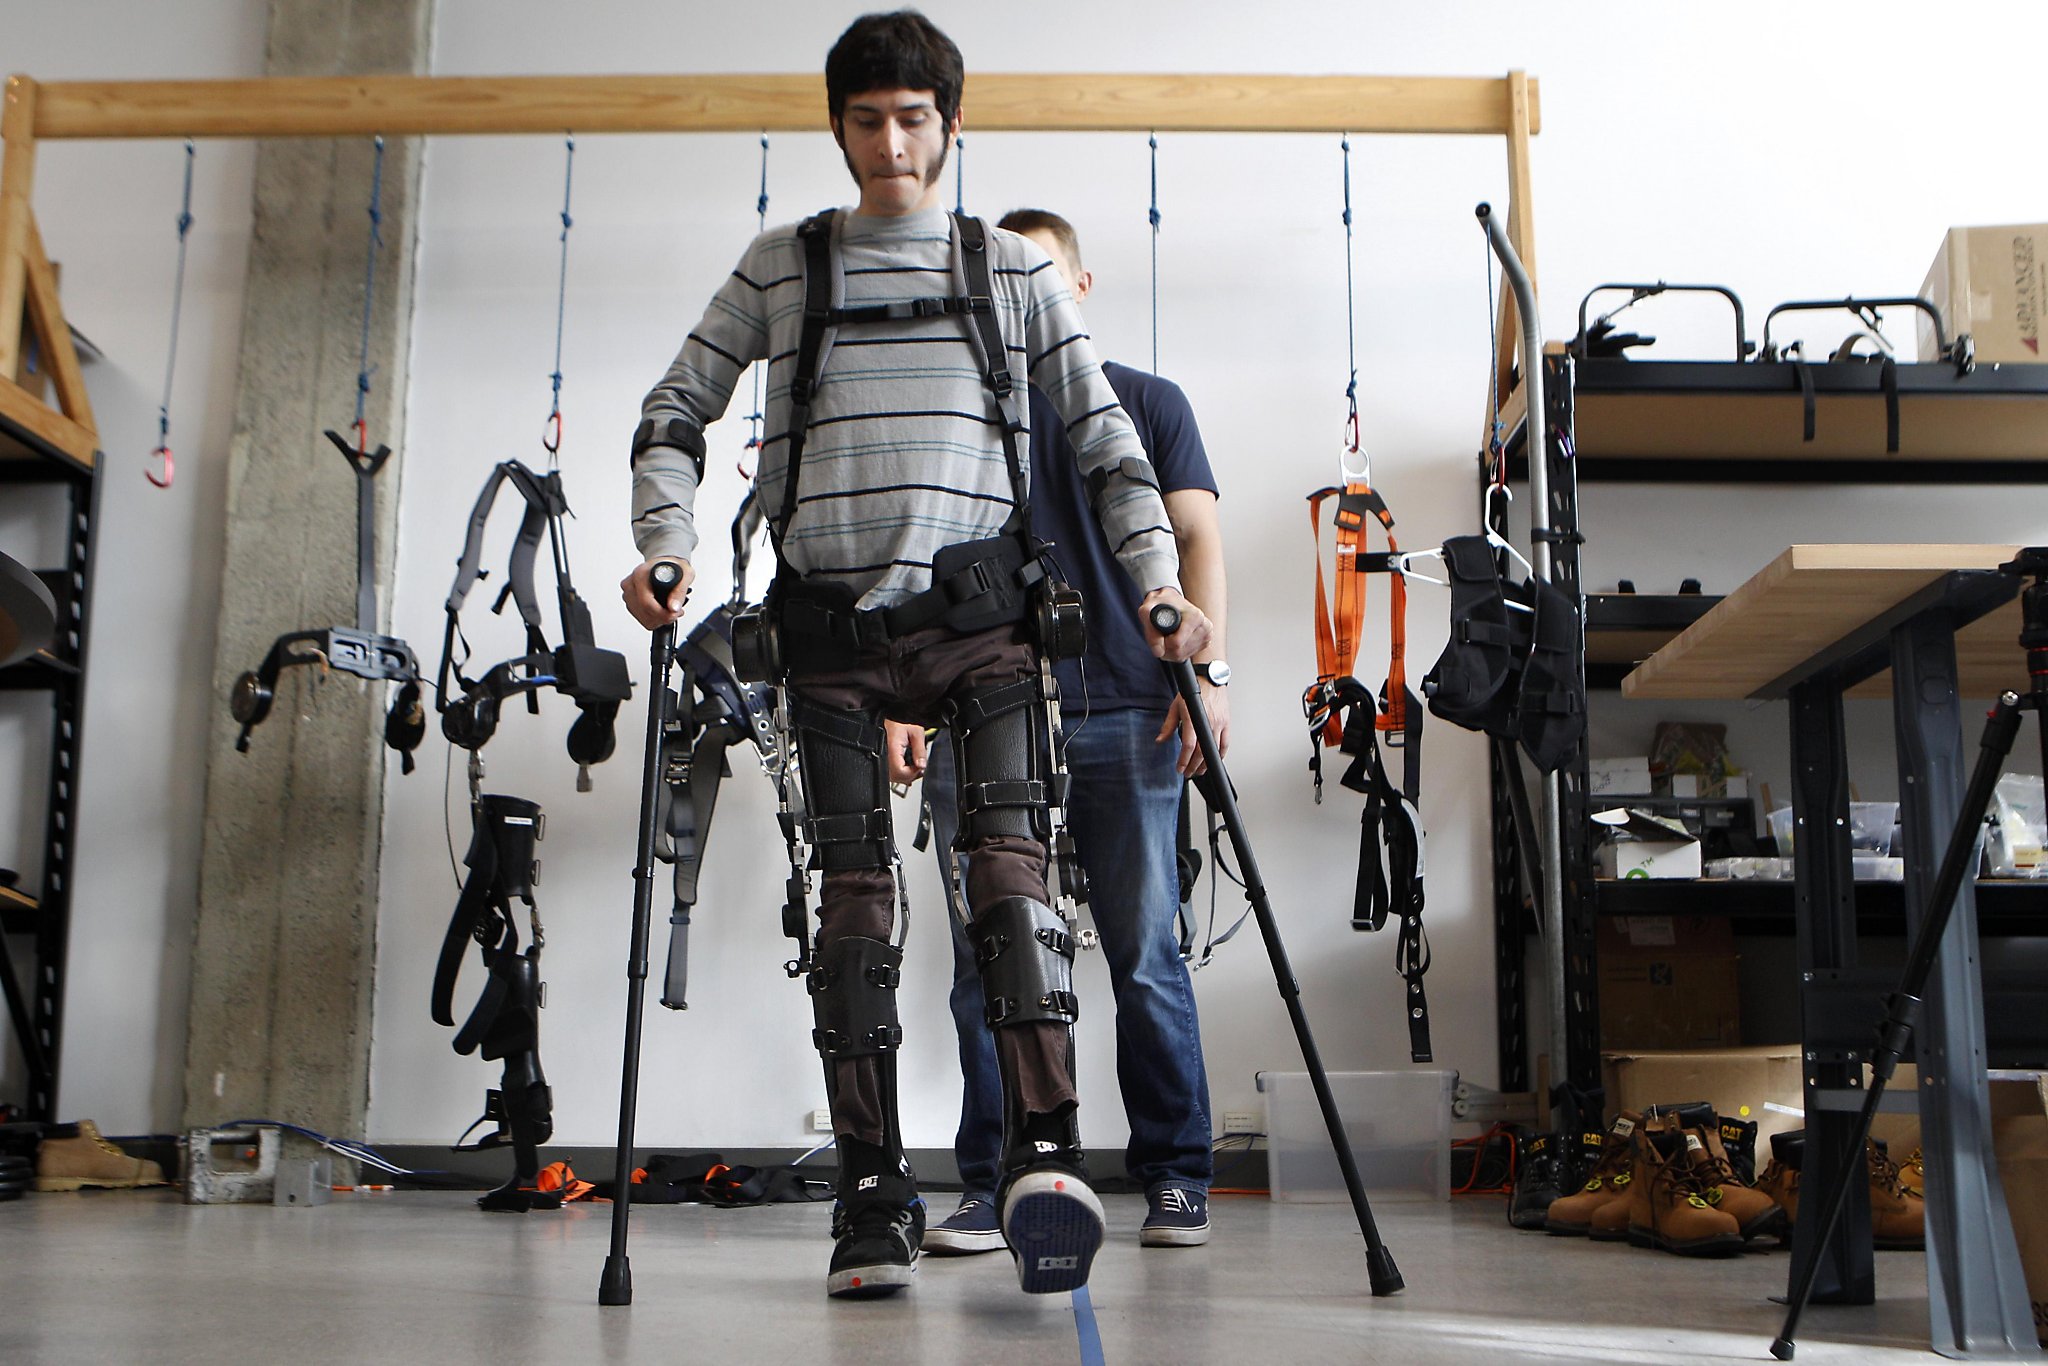 SuitX's robot suit lets paralyzed people walk again